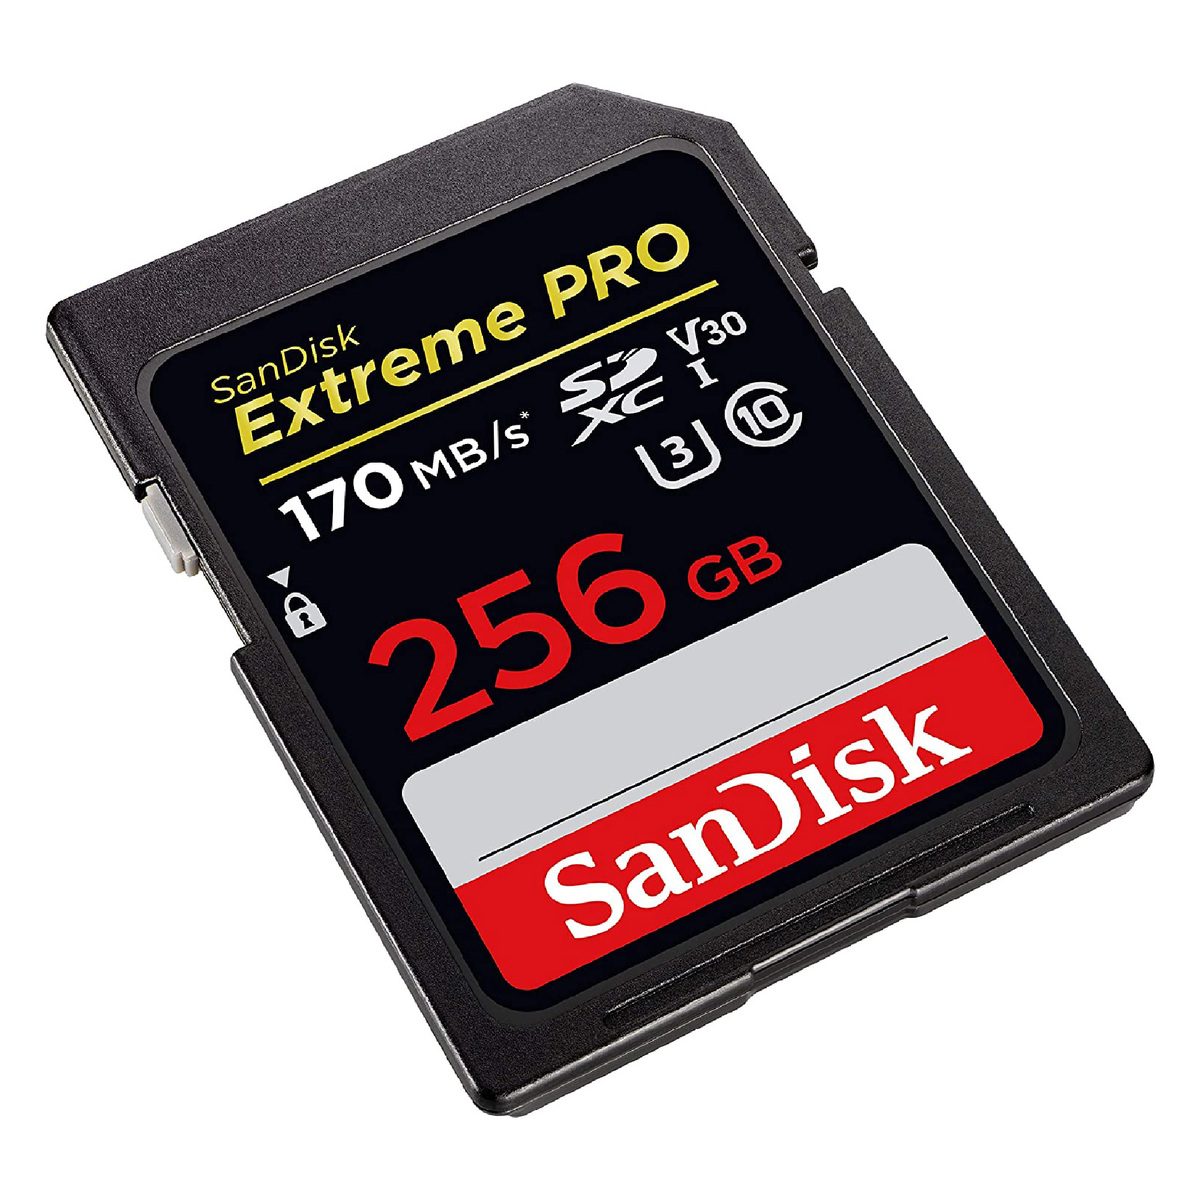 سانديسك اكستريم برو بطاقة ذاكرة SDXC SDXXD سعة 256 جيجابايت